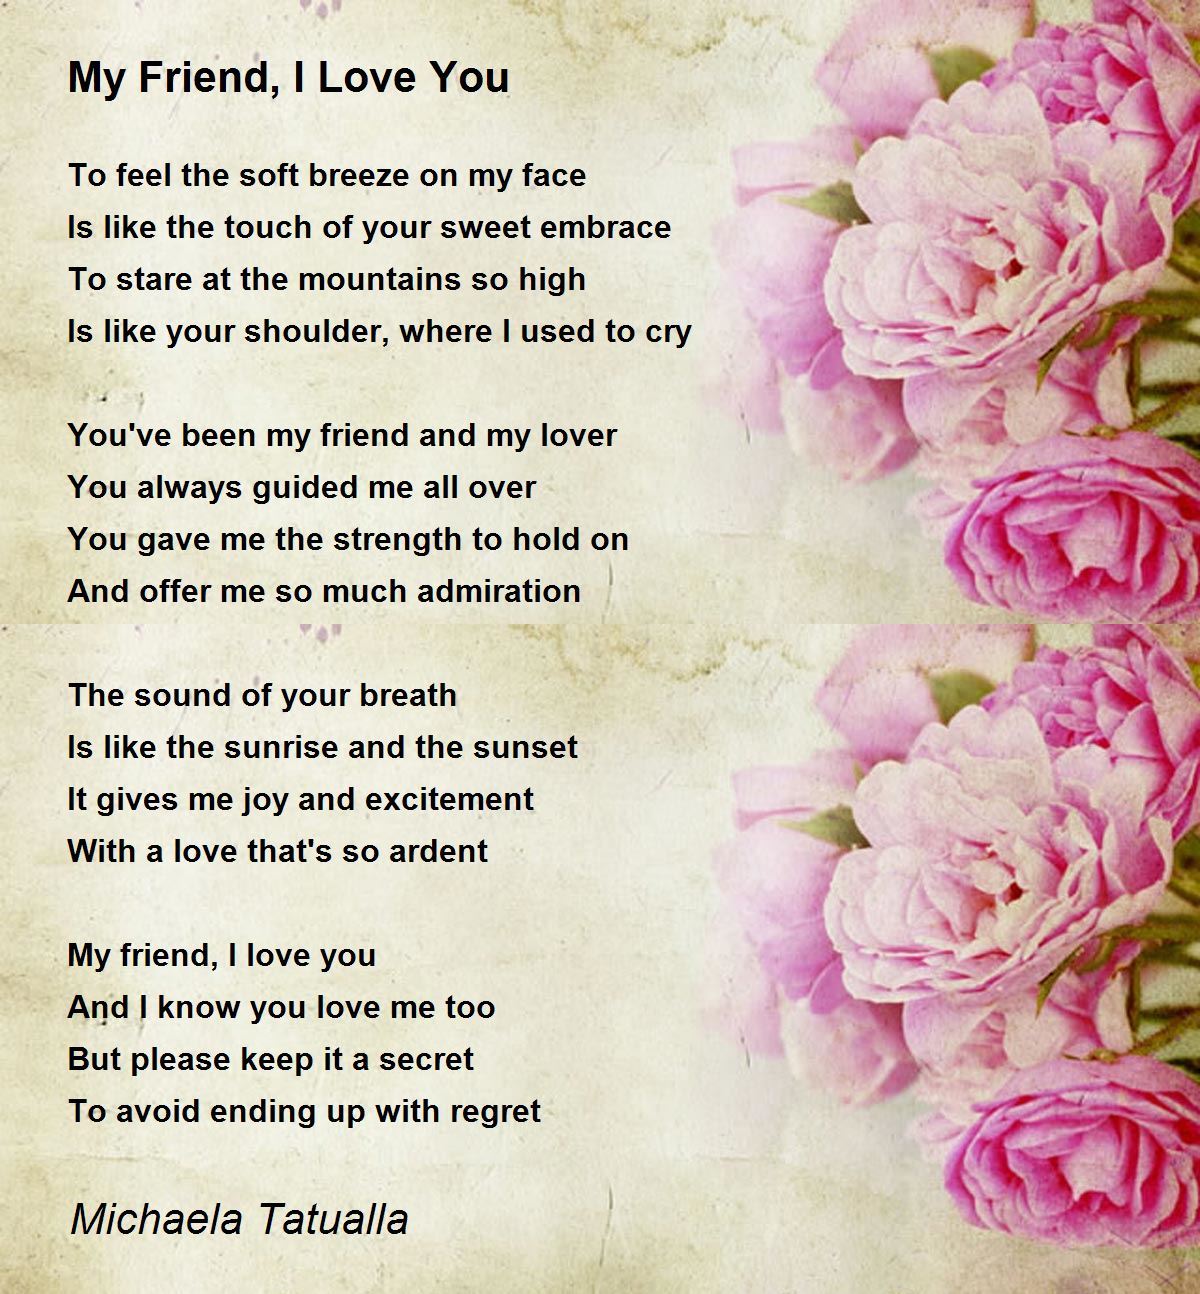 My Friend, I Love You - My Friend, I Love You Poem by Michaela ...